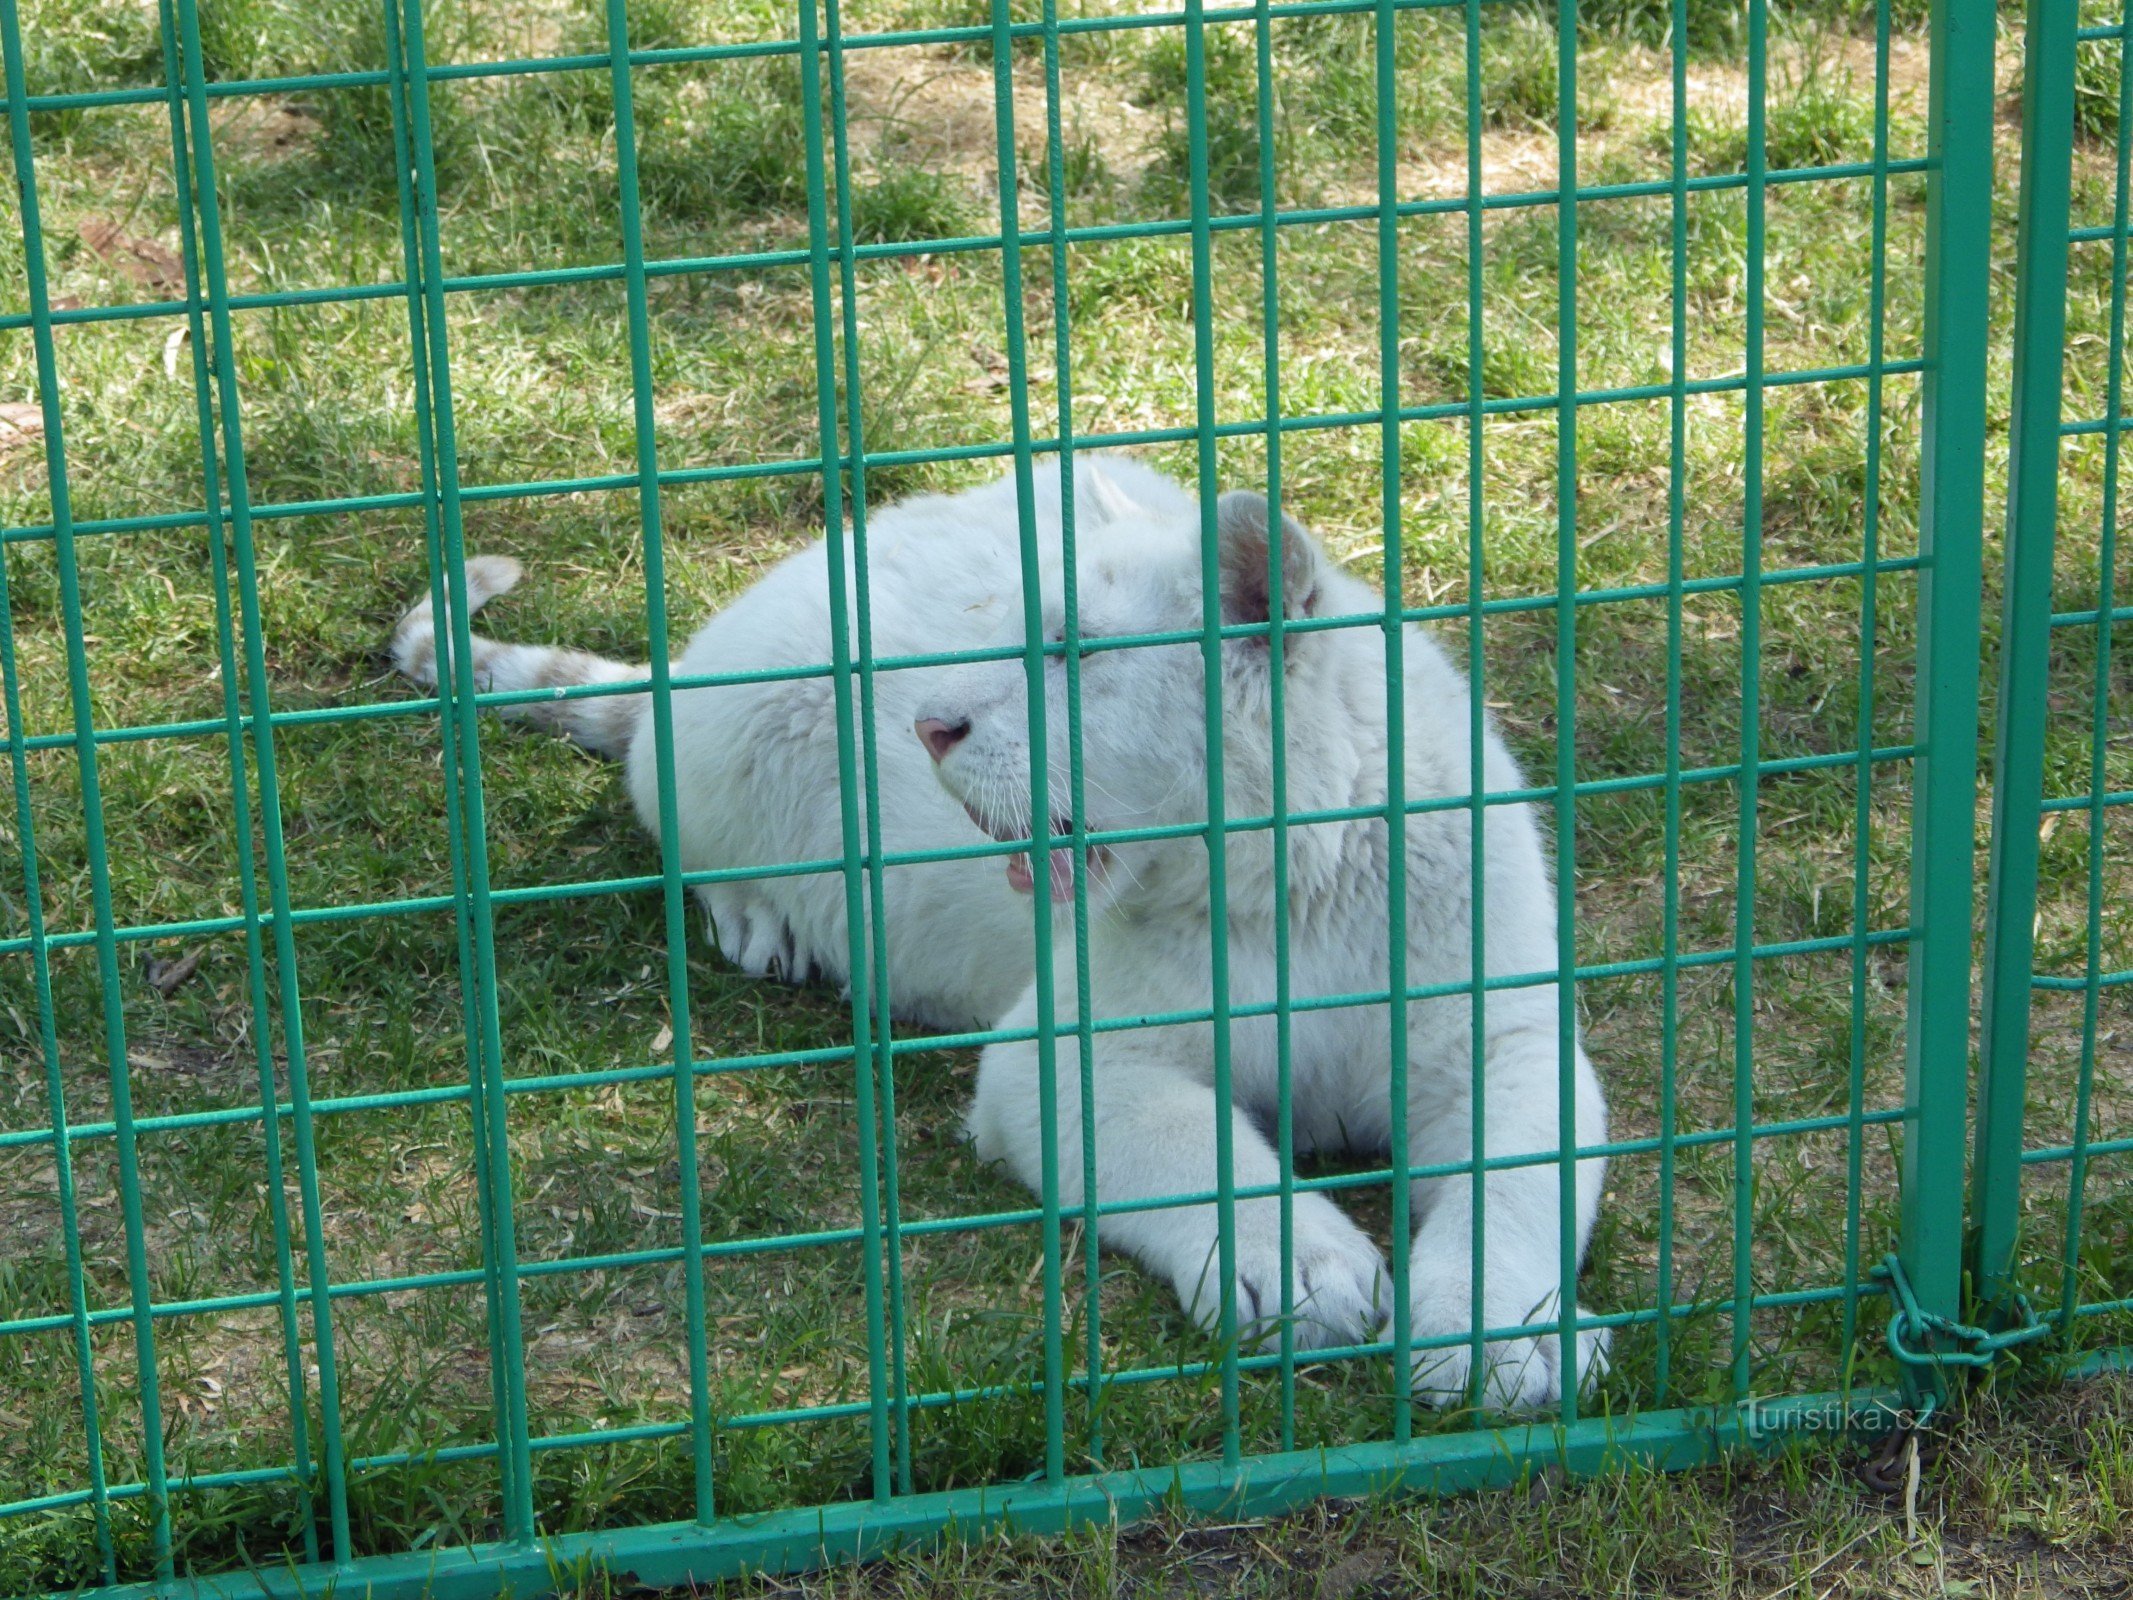 Zoo park Doksy - valokuvaus leijonanpennun kanssa